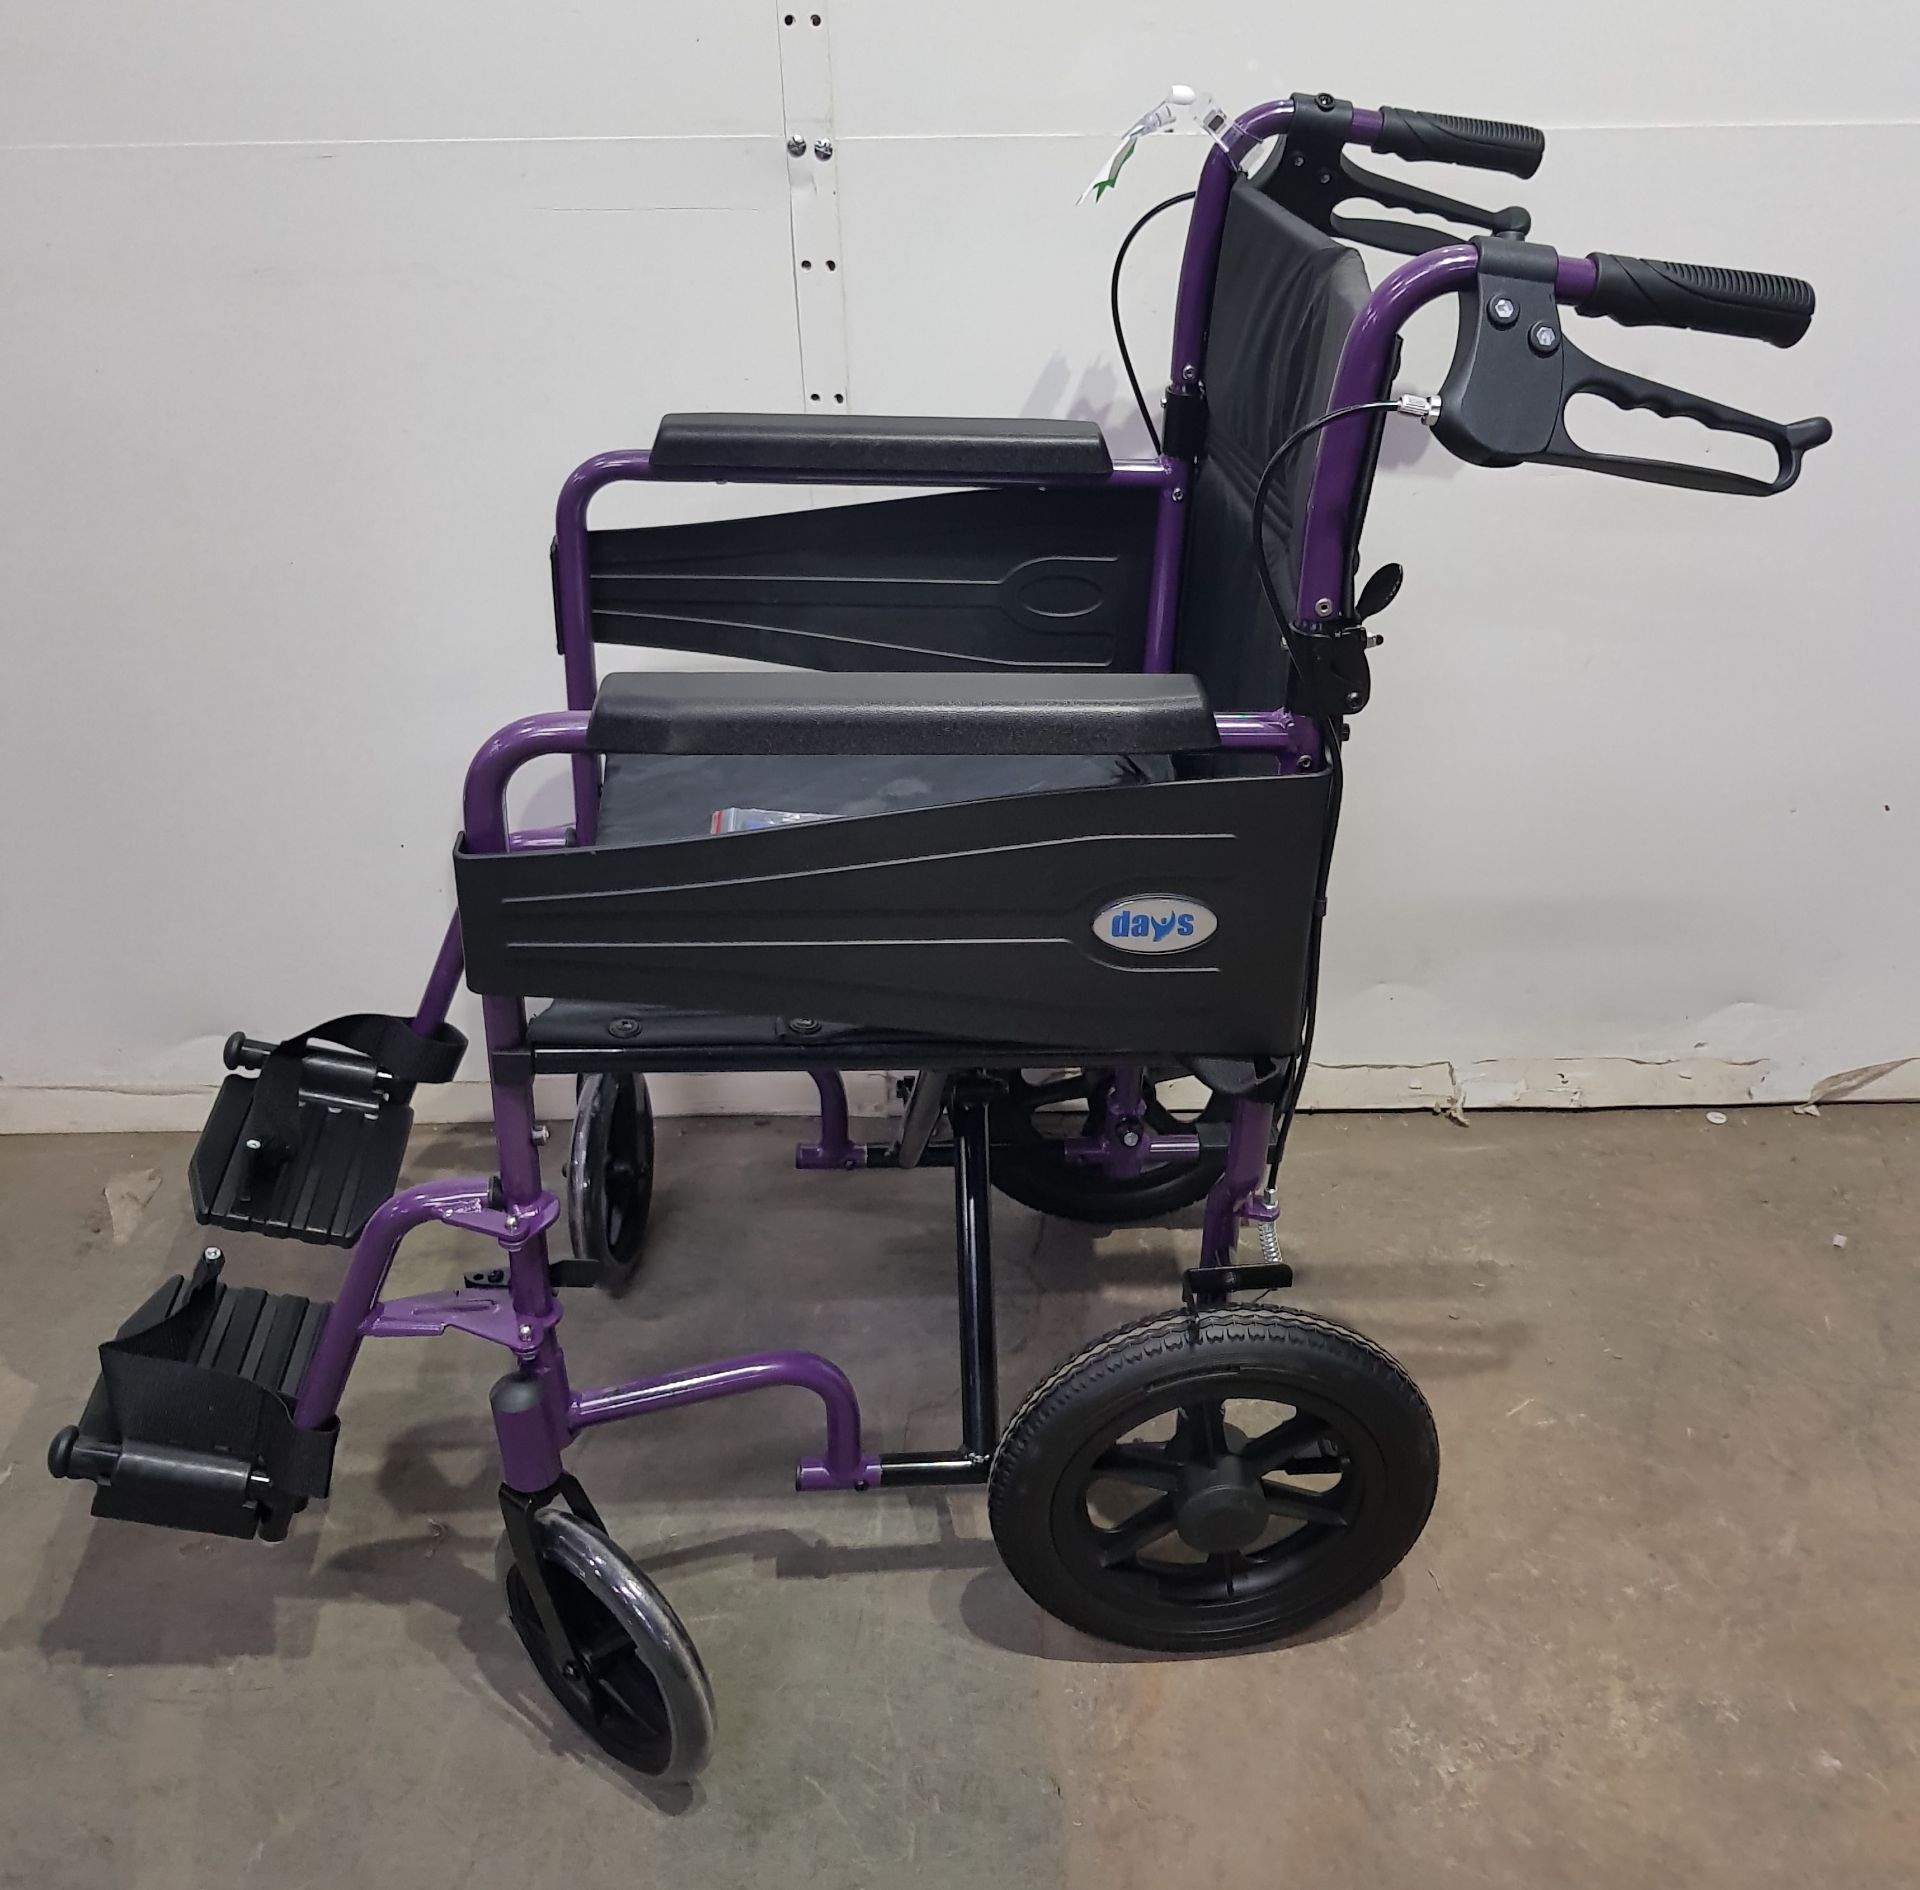 Days Escape Lite Wheelchair - Bild 3 aus 5